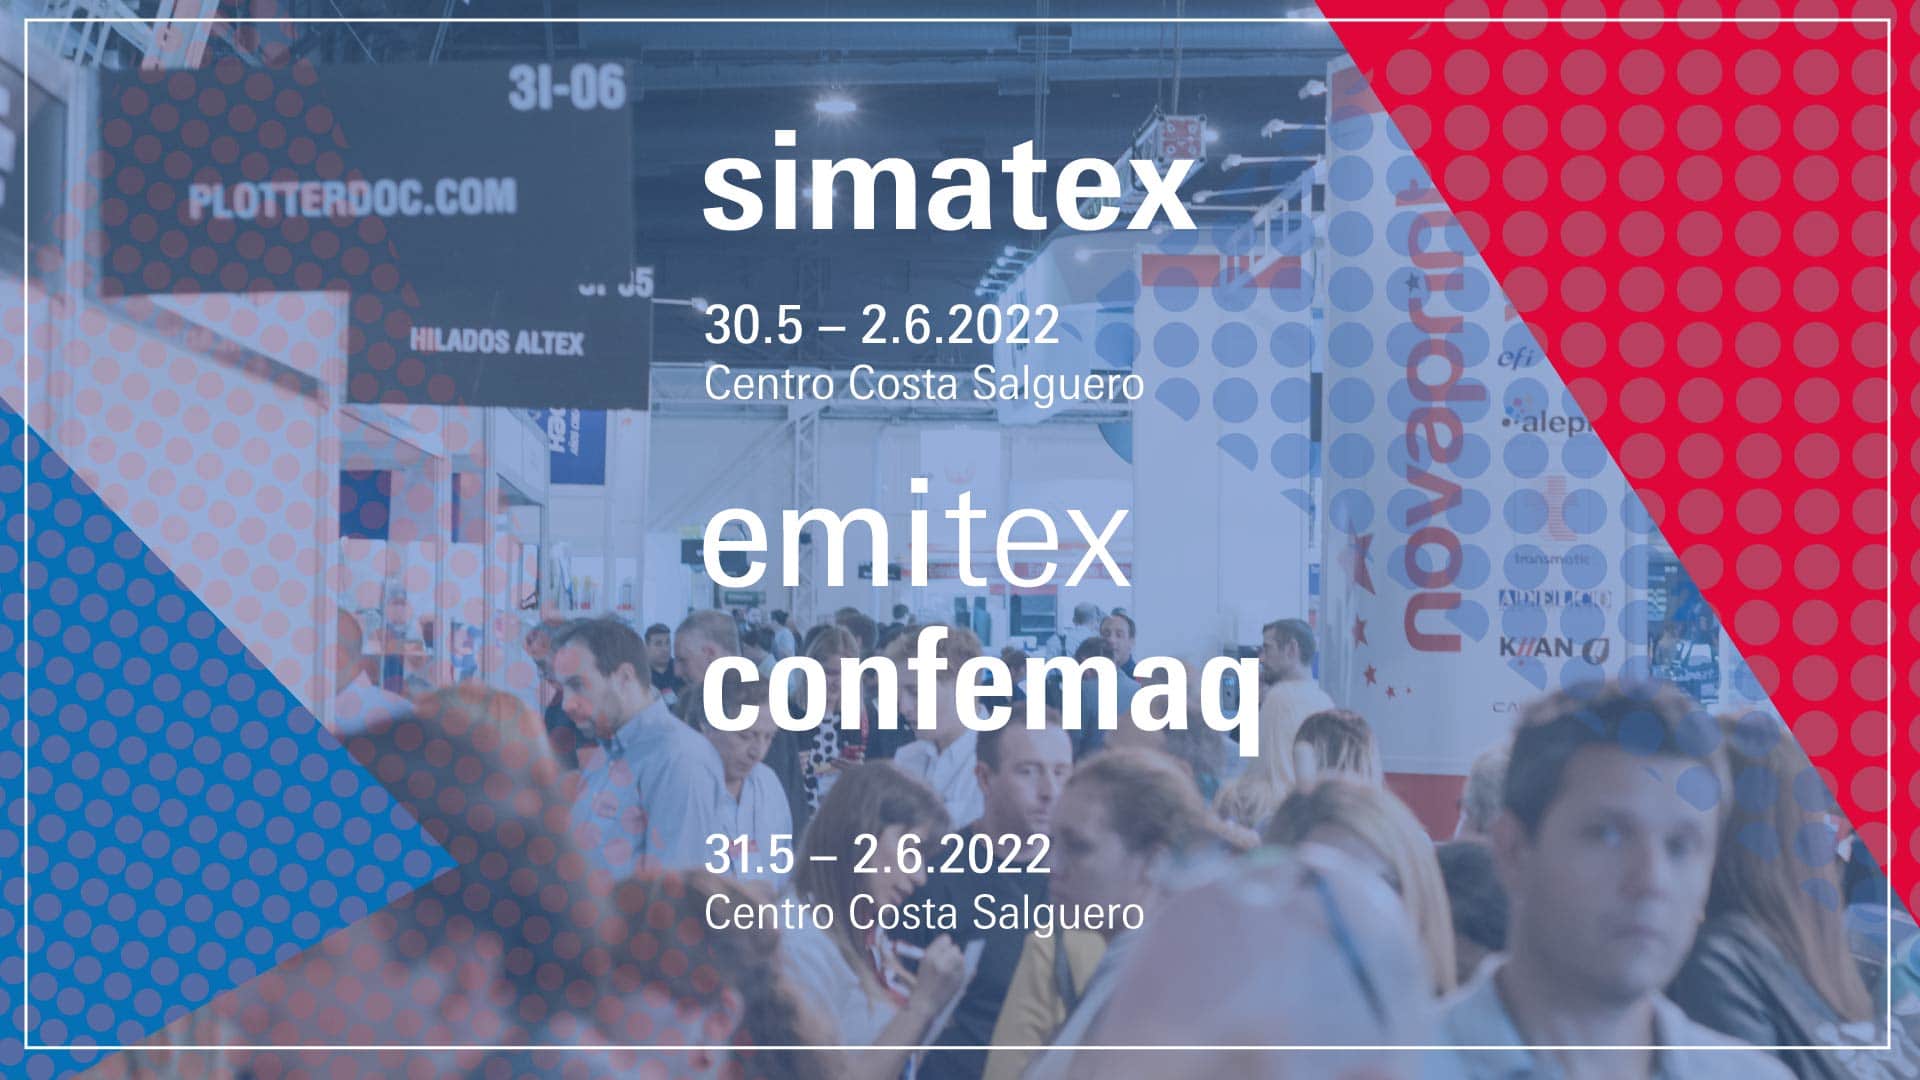 fechas de emitex simatex confemaq 2022